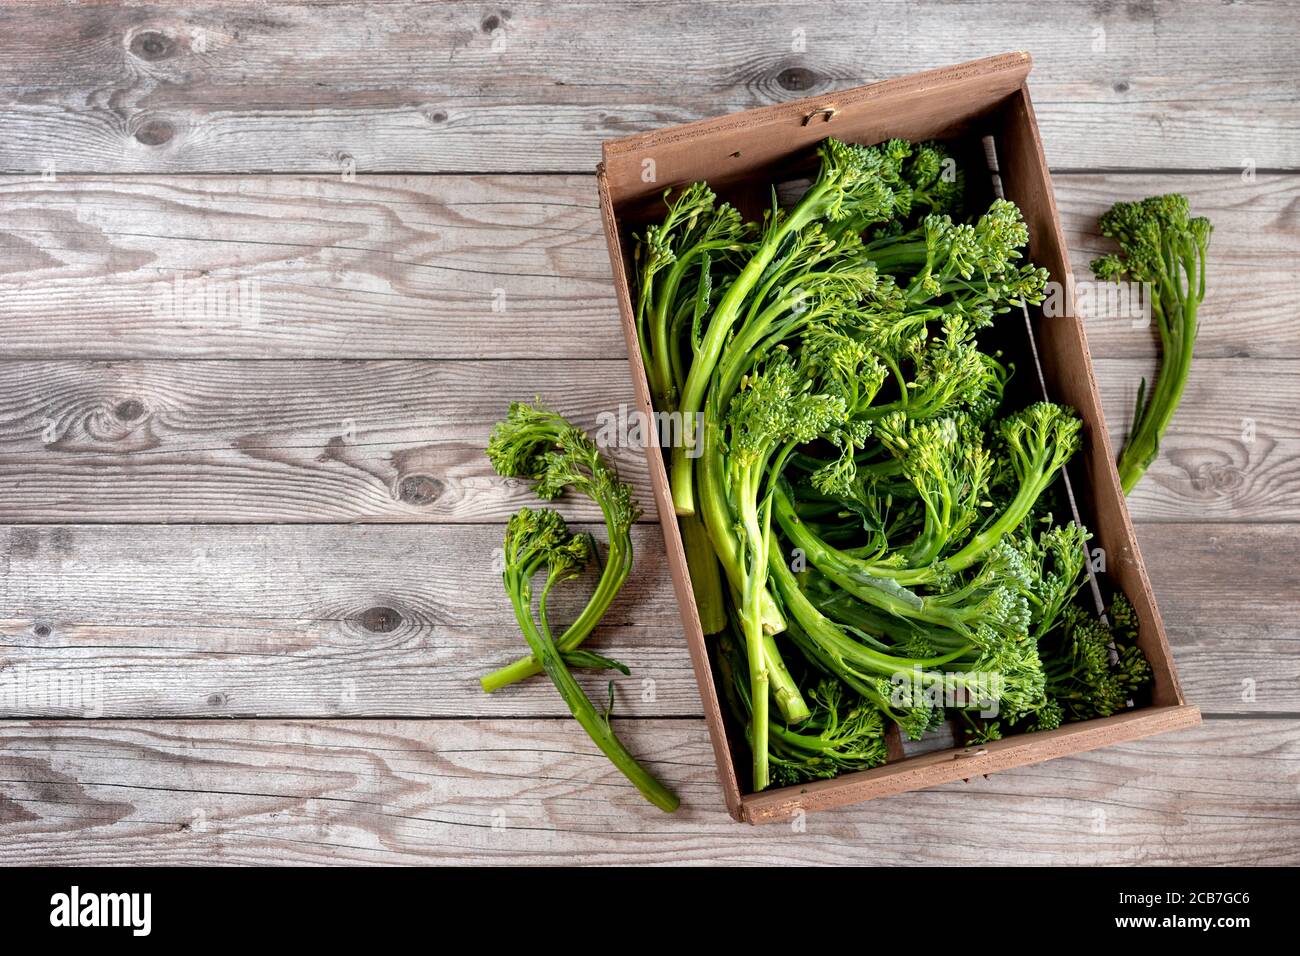 Le broccolini est un nouvel hybride de chou pour une alimentation saine Banque D'Images